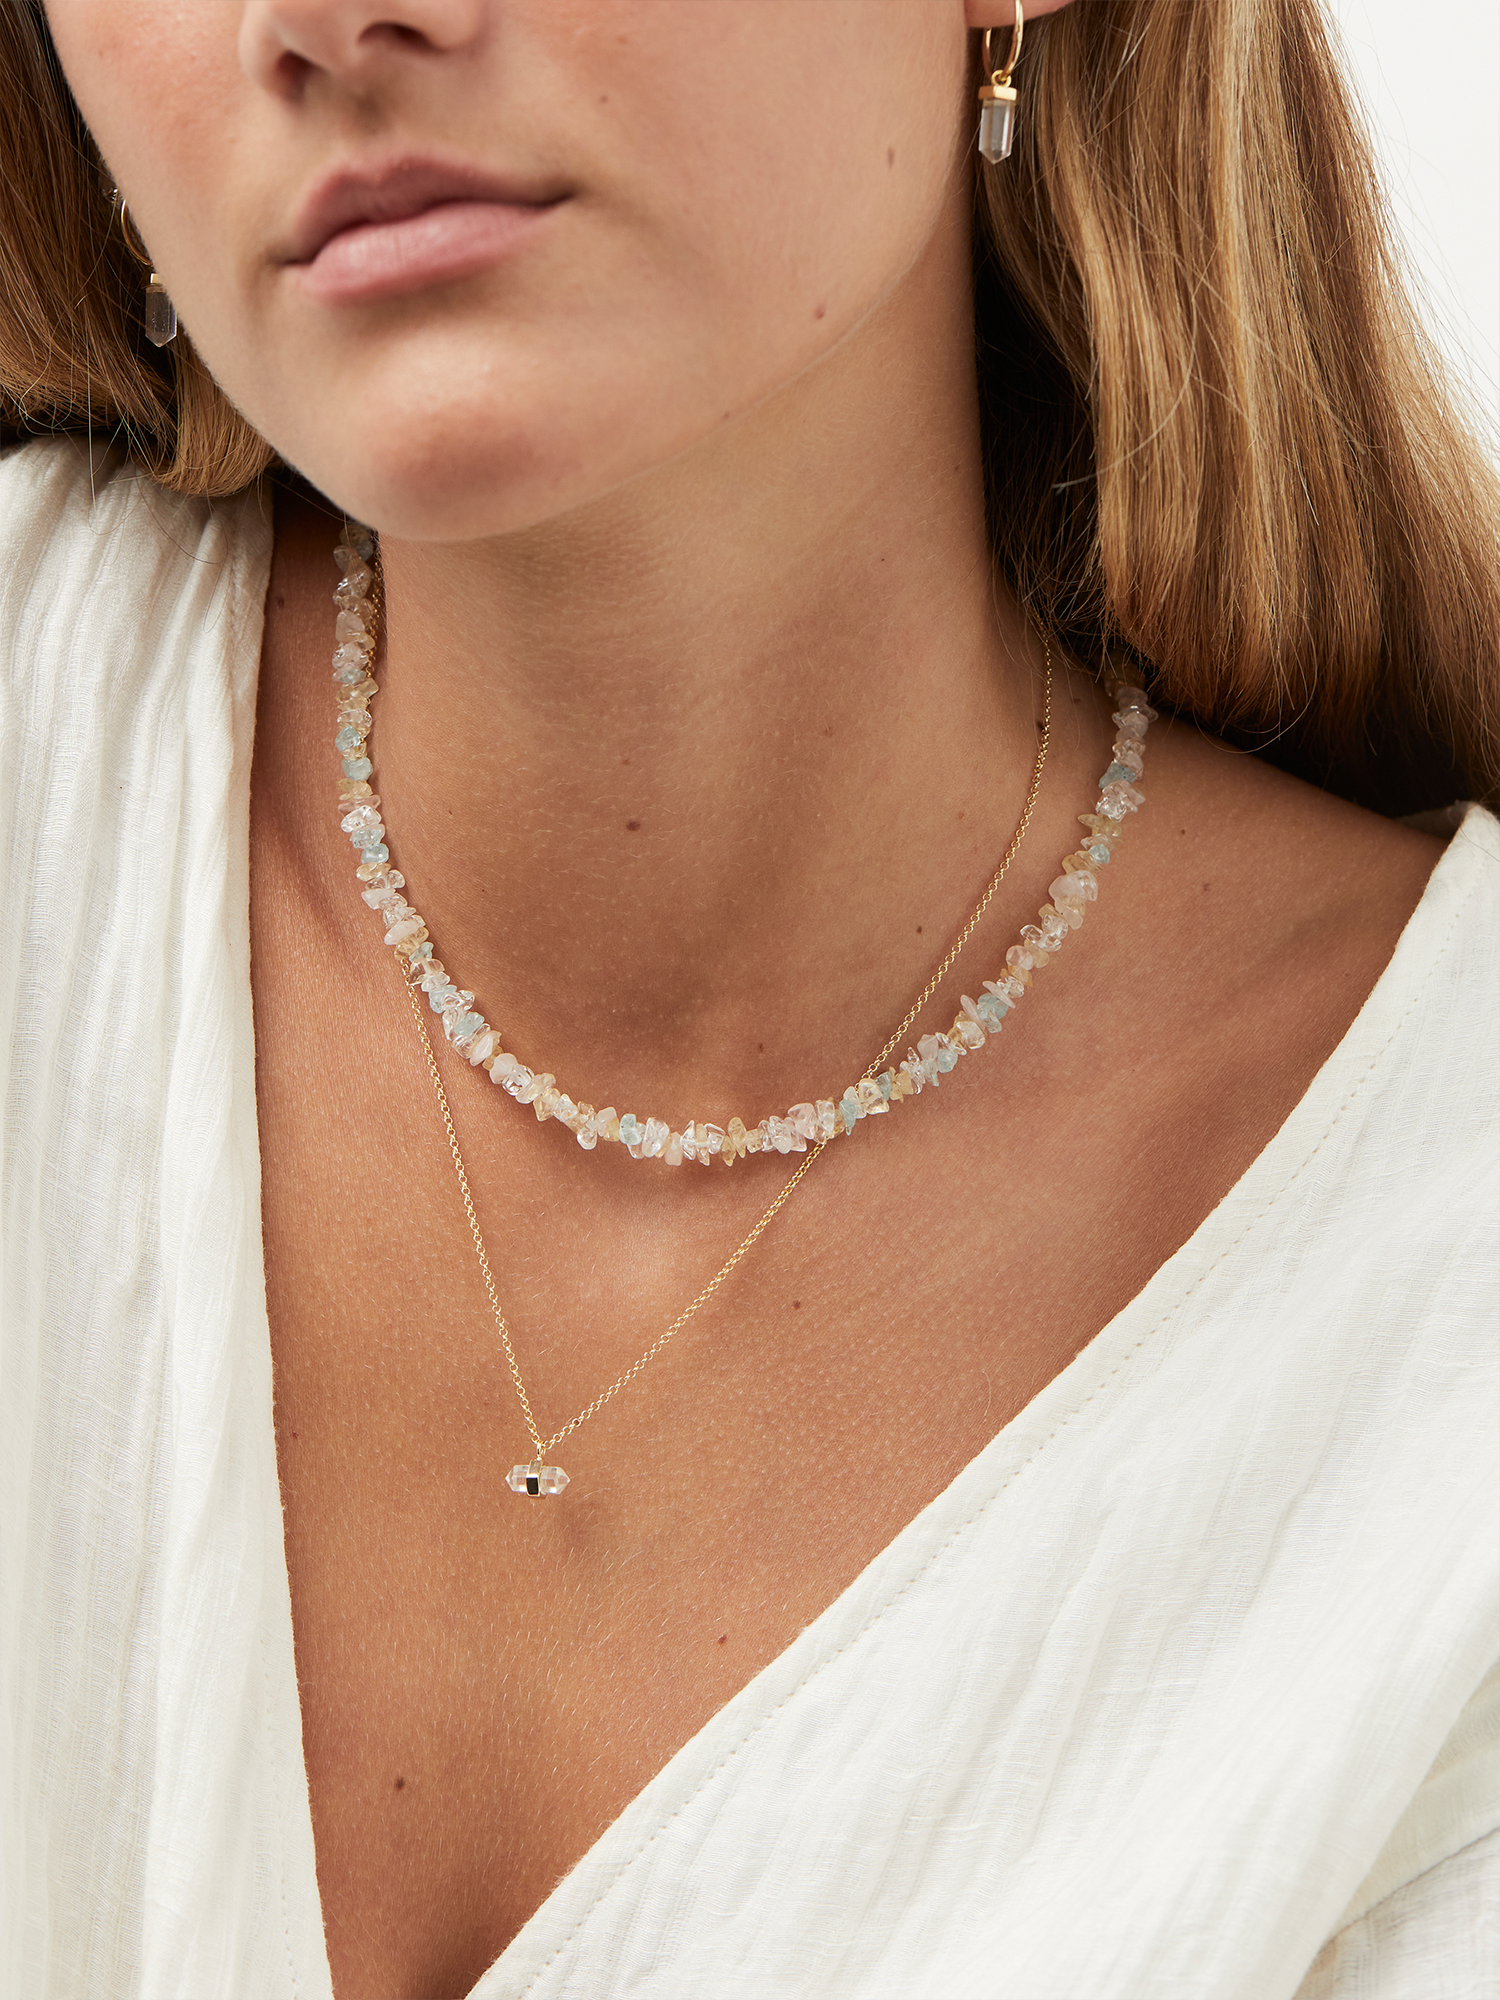 peony crystal necklace | clear quartz + rose quartz + aquamarine + citrine